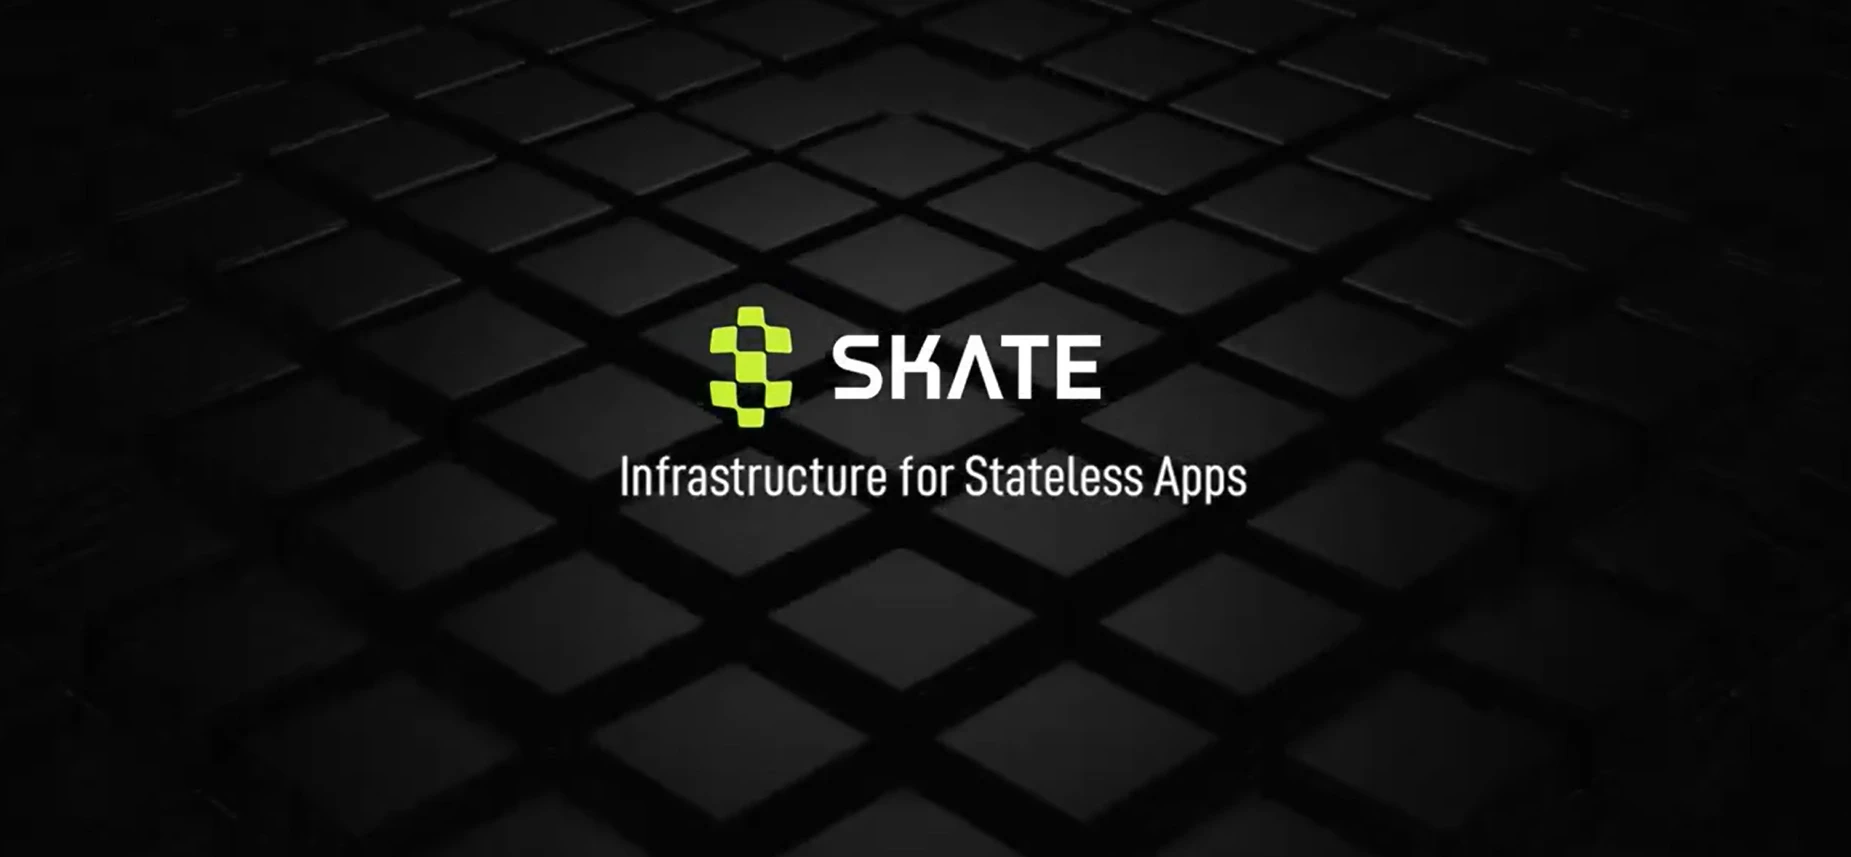 アイランドからインターネットへ: フルチェーン アプリケーション層である Skate が DApps のフルチェーン展開をどのように実現するか